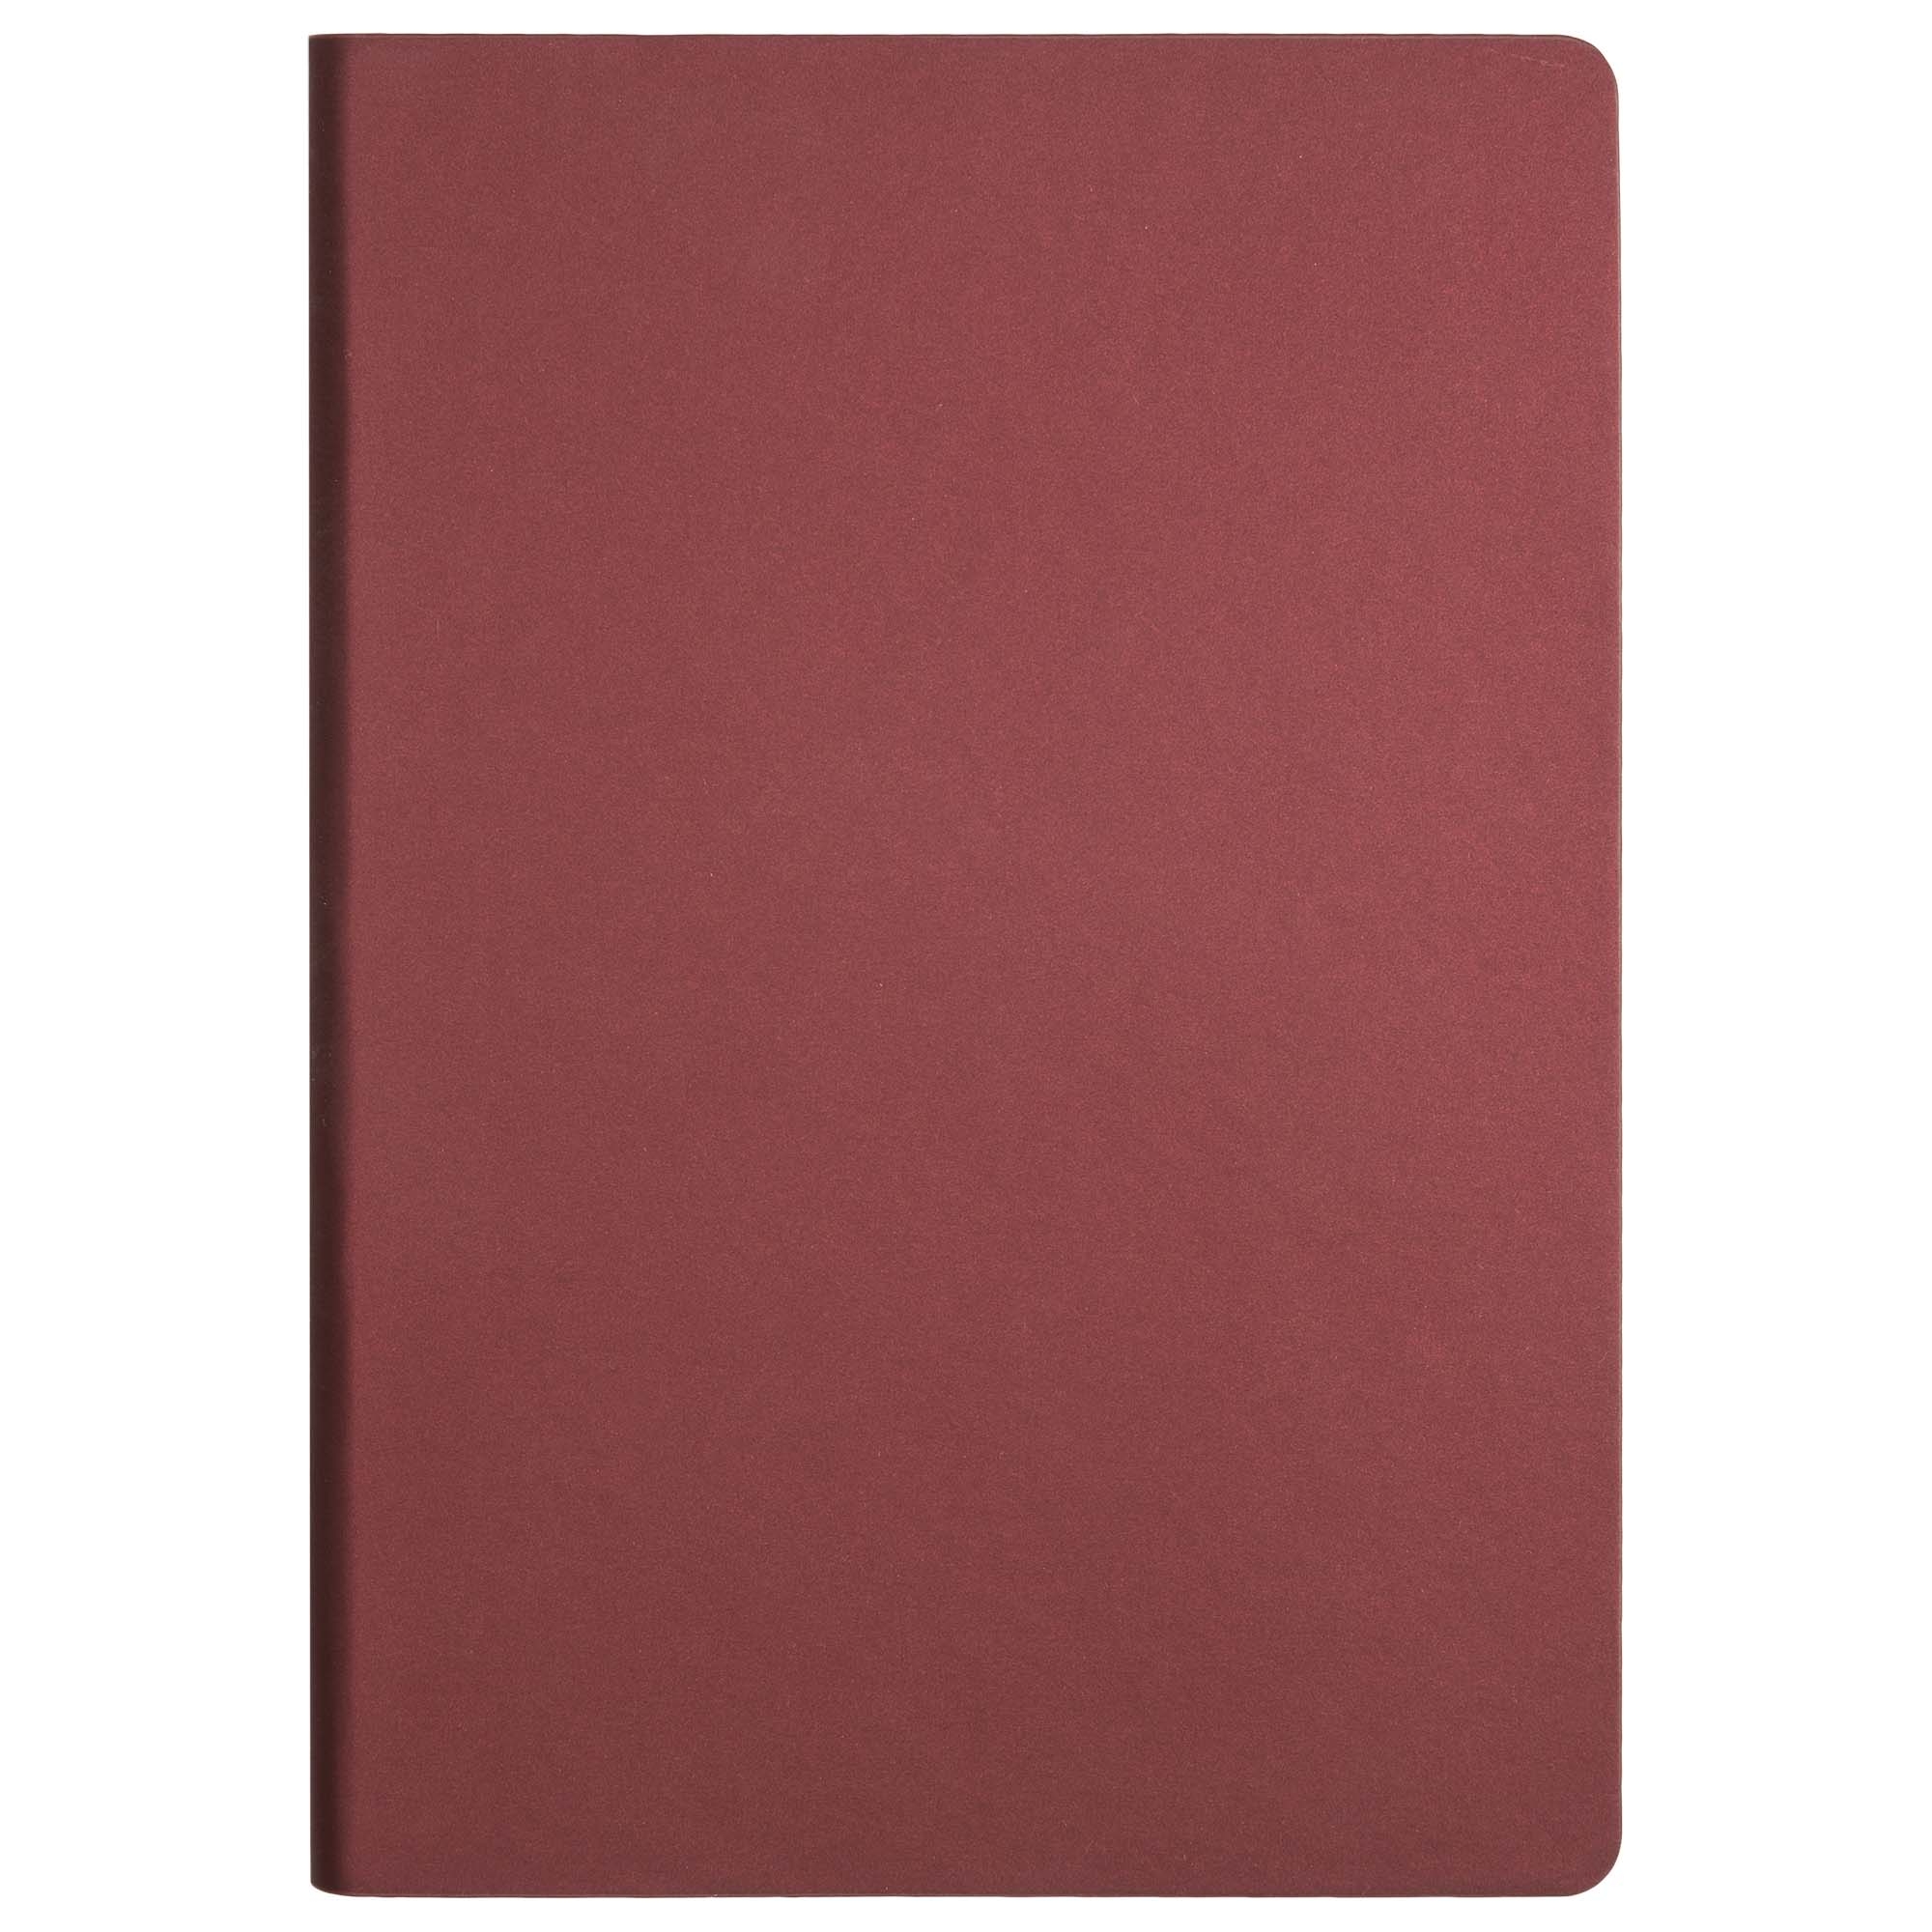 Ежедневник Star недатированный, бургунди (без упаковки, со стикерами), бордовый